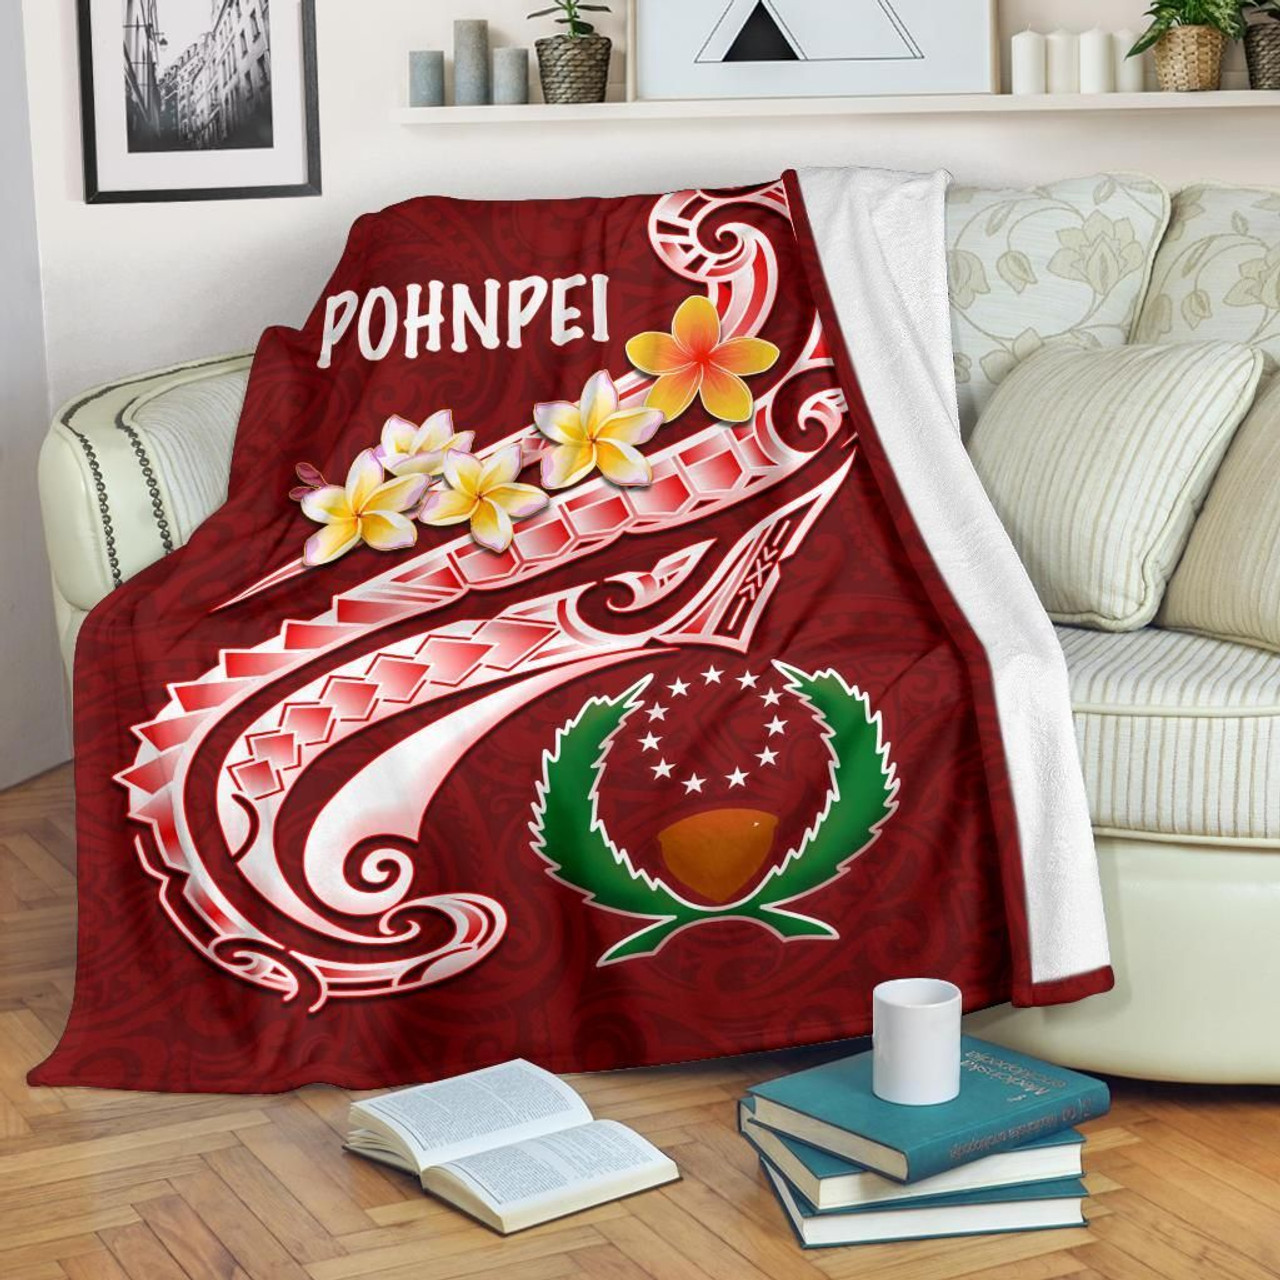 Pohnpei Premium Blanket - Pohnpei Seal Polynesian Patterns Plumeria 2